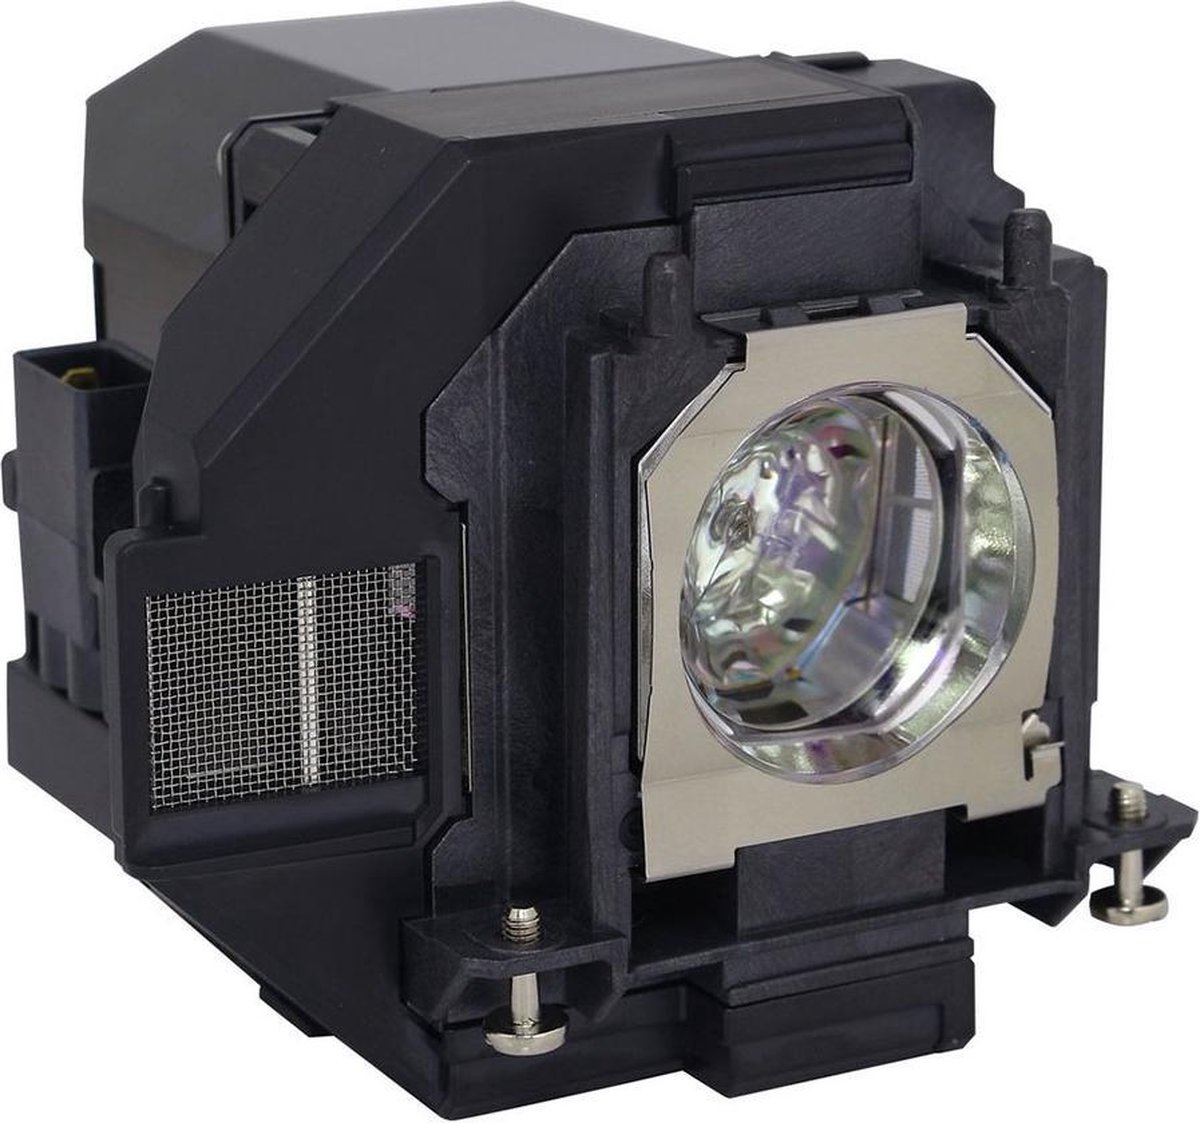 Beamerlamp geschikt voor de EPSON EB-U42 beamer, lamp code LP96 / V13H010L96. Bevat originele UHP lamp, prestaties gelijk aan origineel.